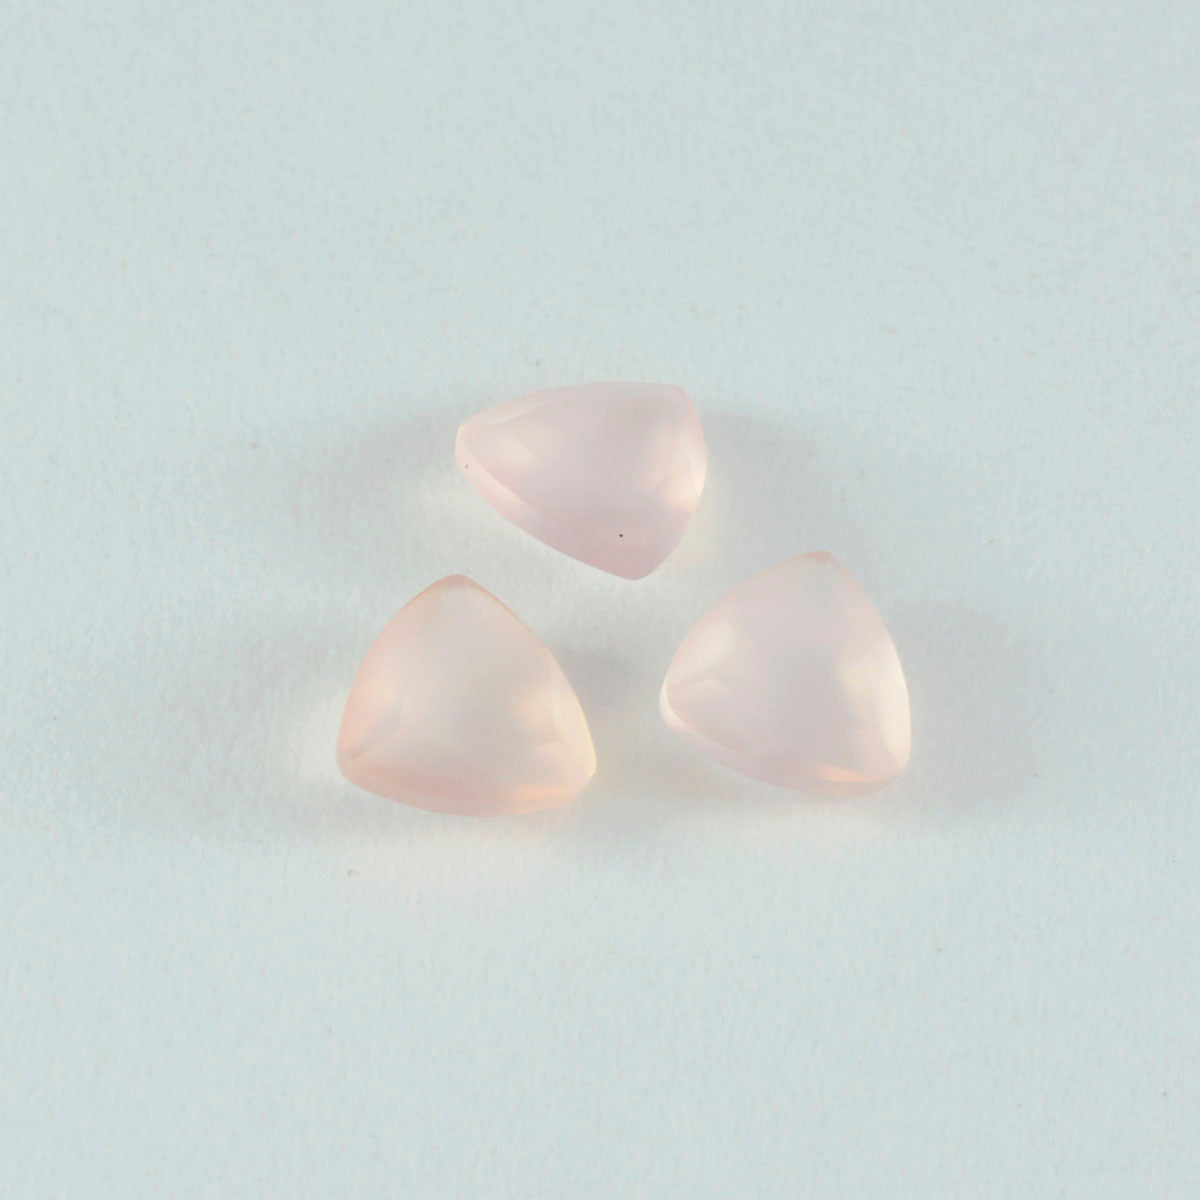 riyogems 1 pieza de cuarzo rosa facetado de 9x9 mm con forma de billón, piedra preciosa suelta de calidad A+